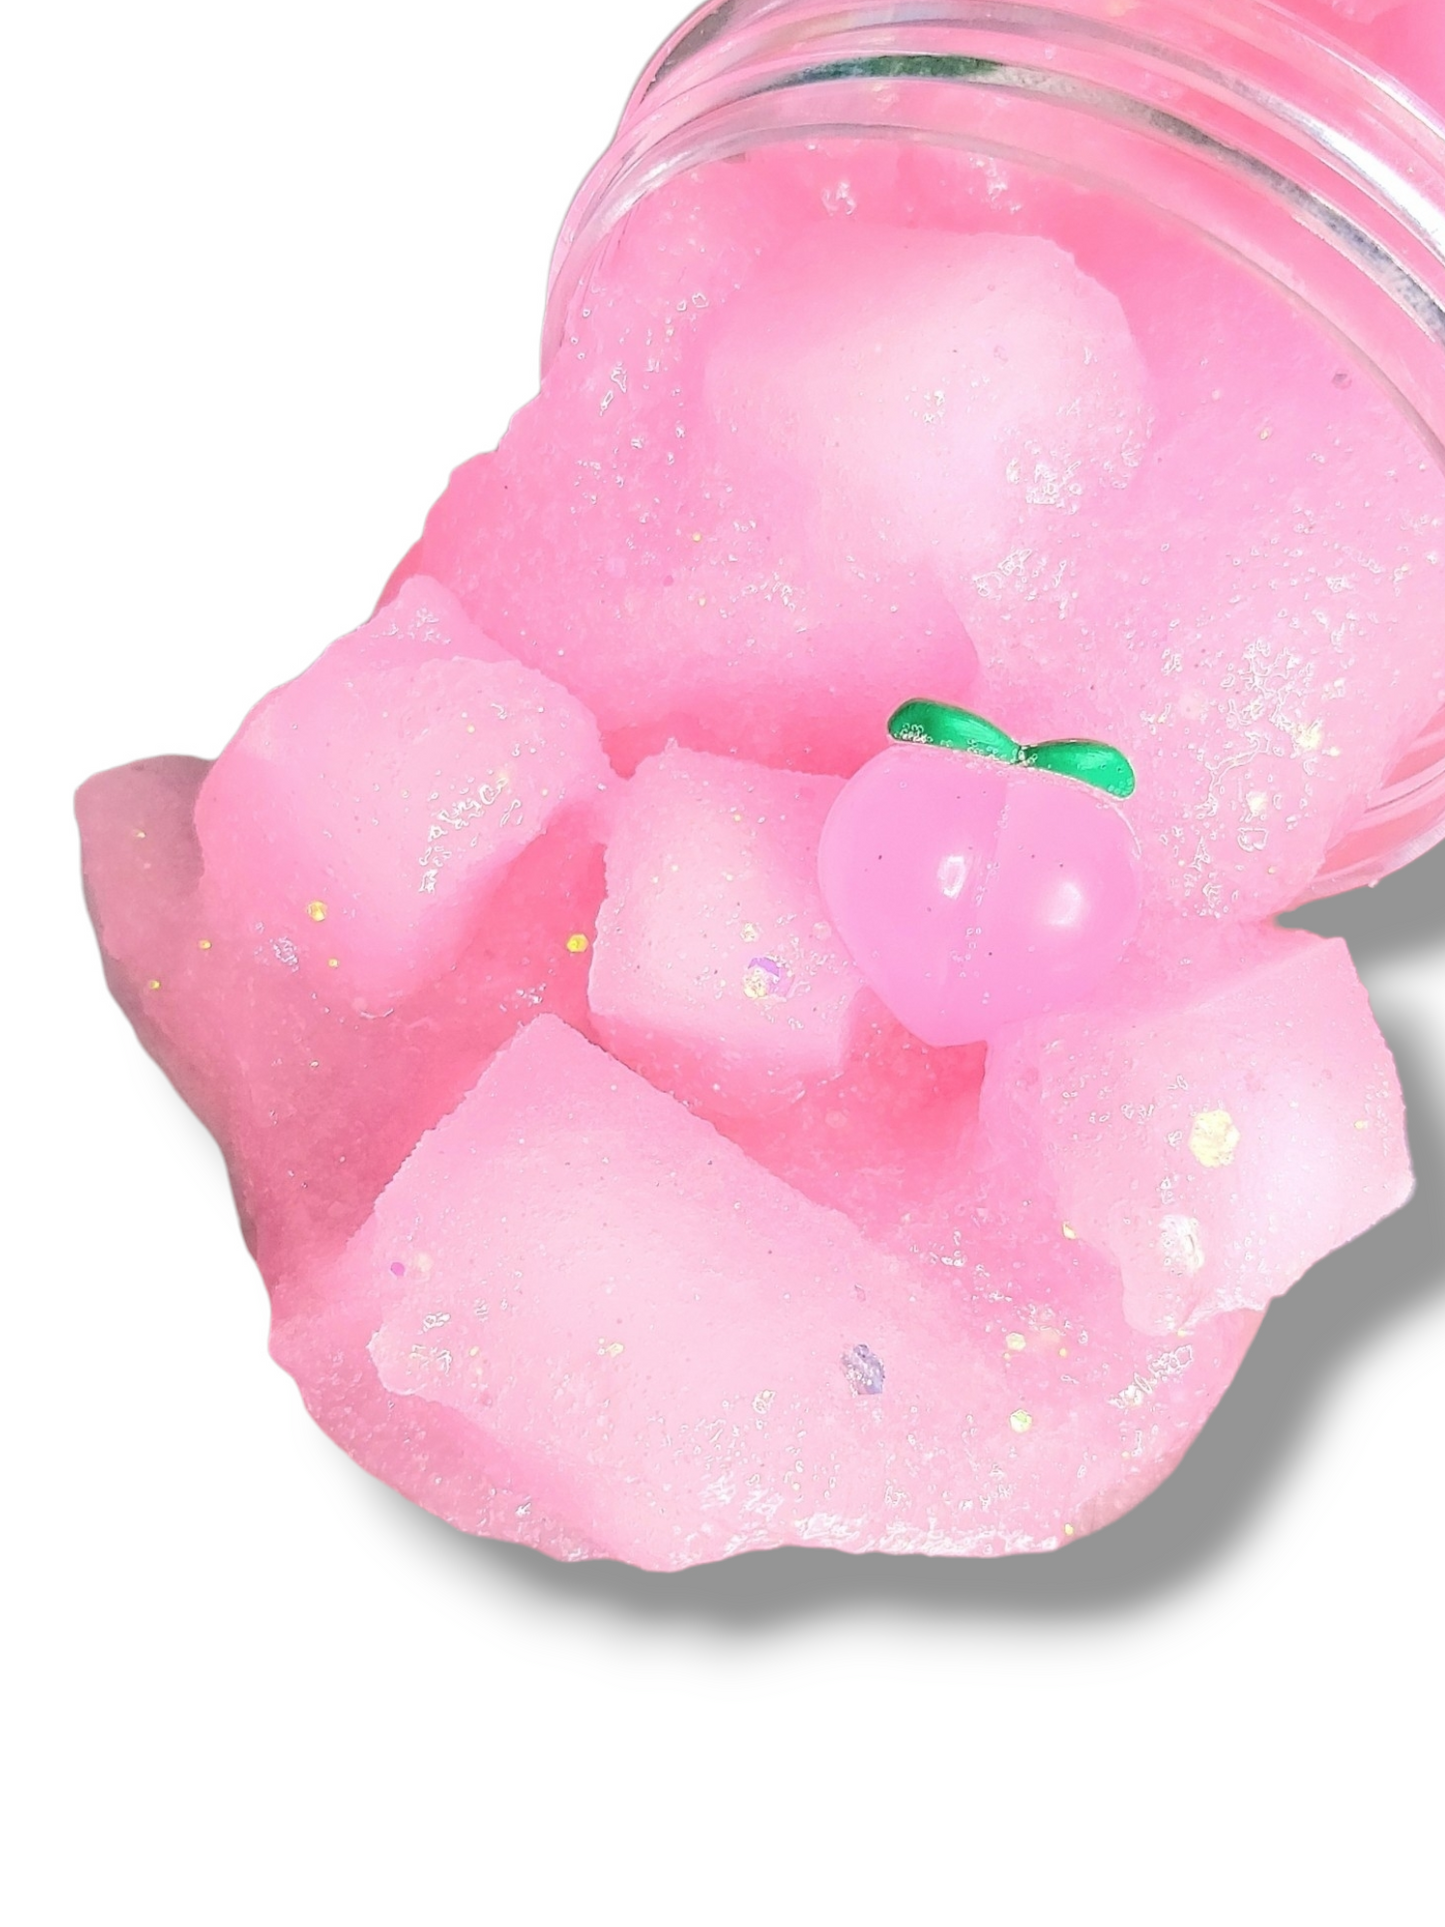 Kitty's Peach Jelly Cube Handmade Slime 8oz Slime by Hoshimi Slimes LLC | Hoshimi Slimes LLC